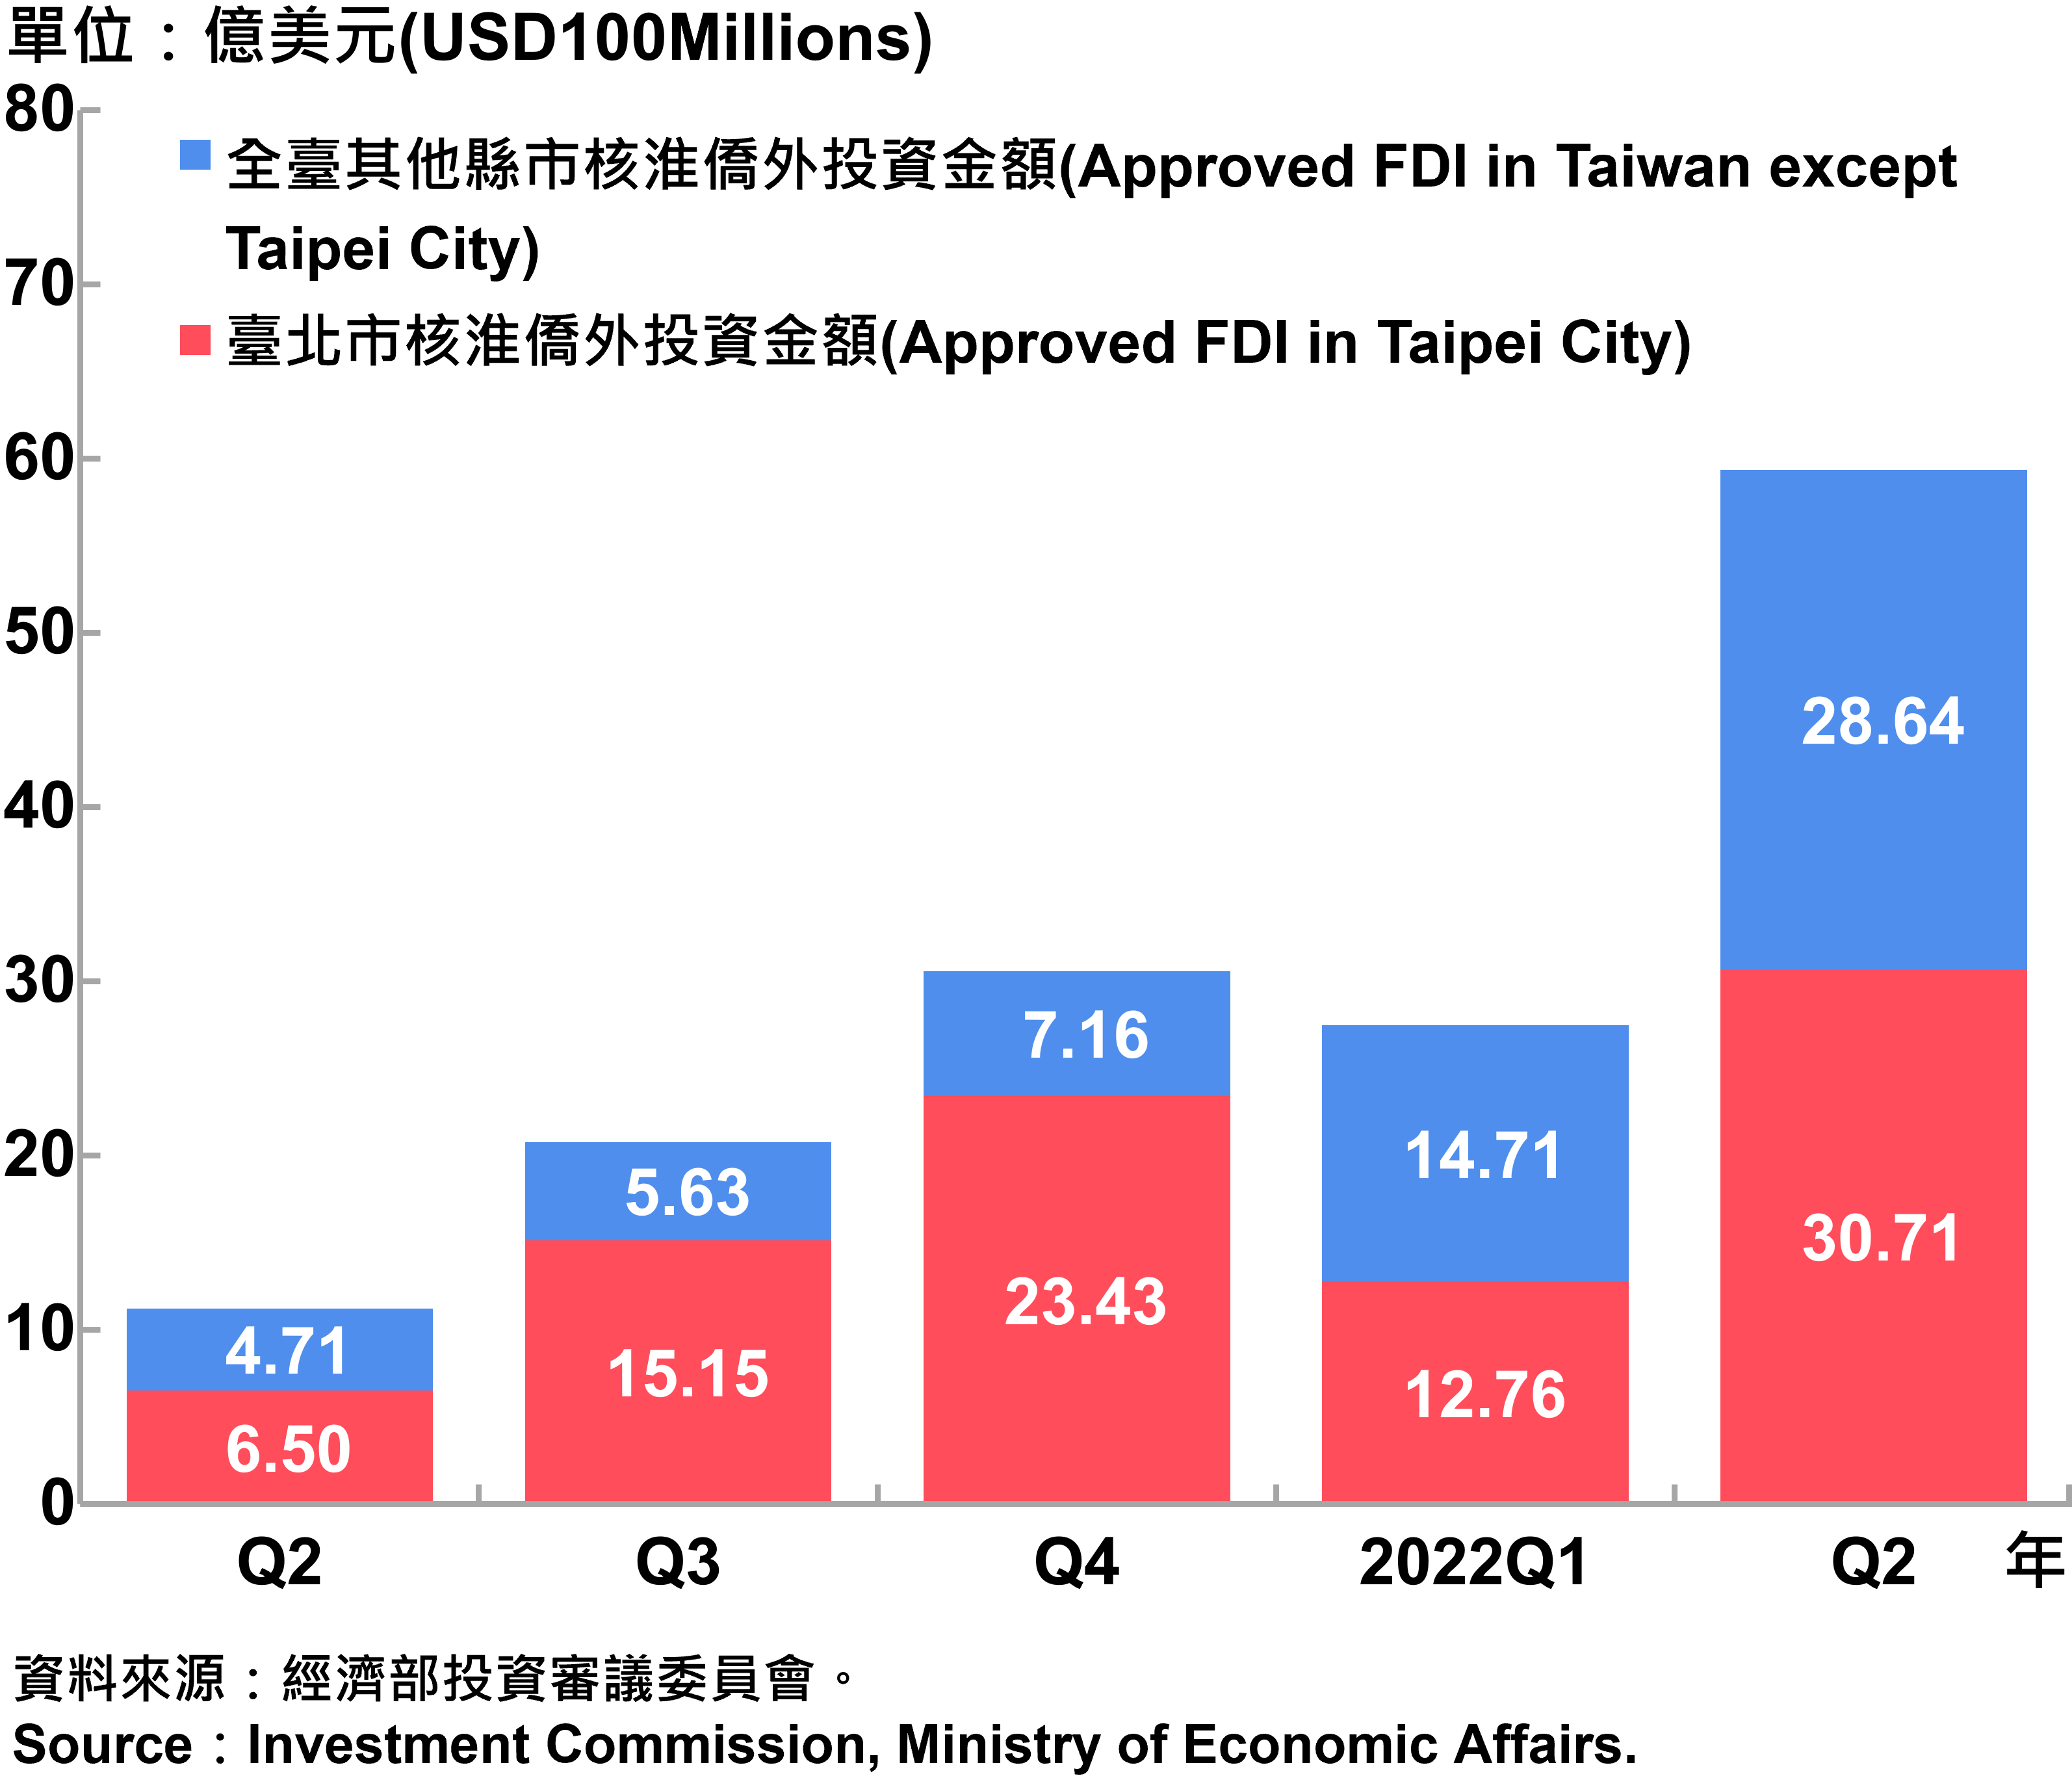 臺北市與全國僑外投資金額—2022Q2 Foreign Direct Investment（FDI）in Taipei City and Taiwan—2022Q2